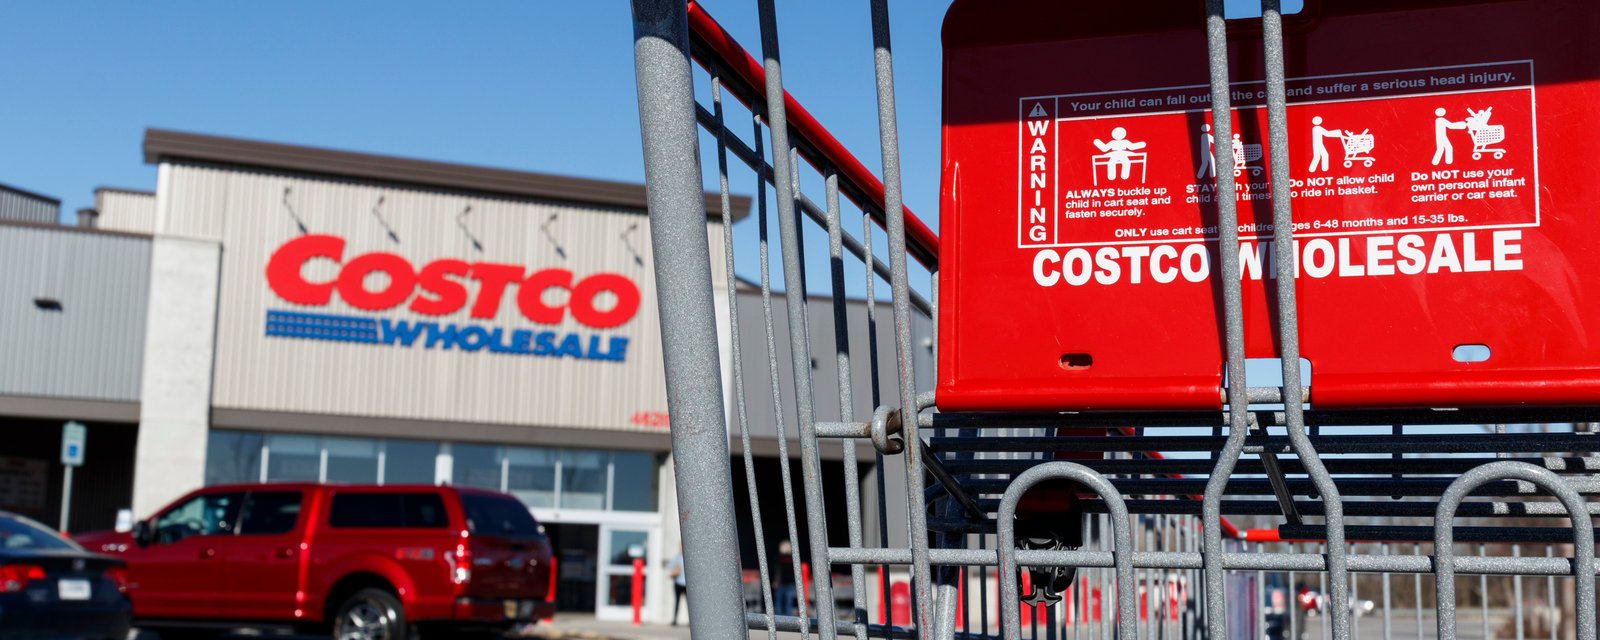 Une femme explique pourquoi adhérer au Costco a été sa «pire décision» financière.